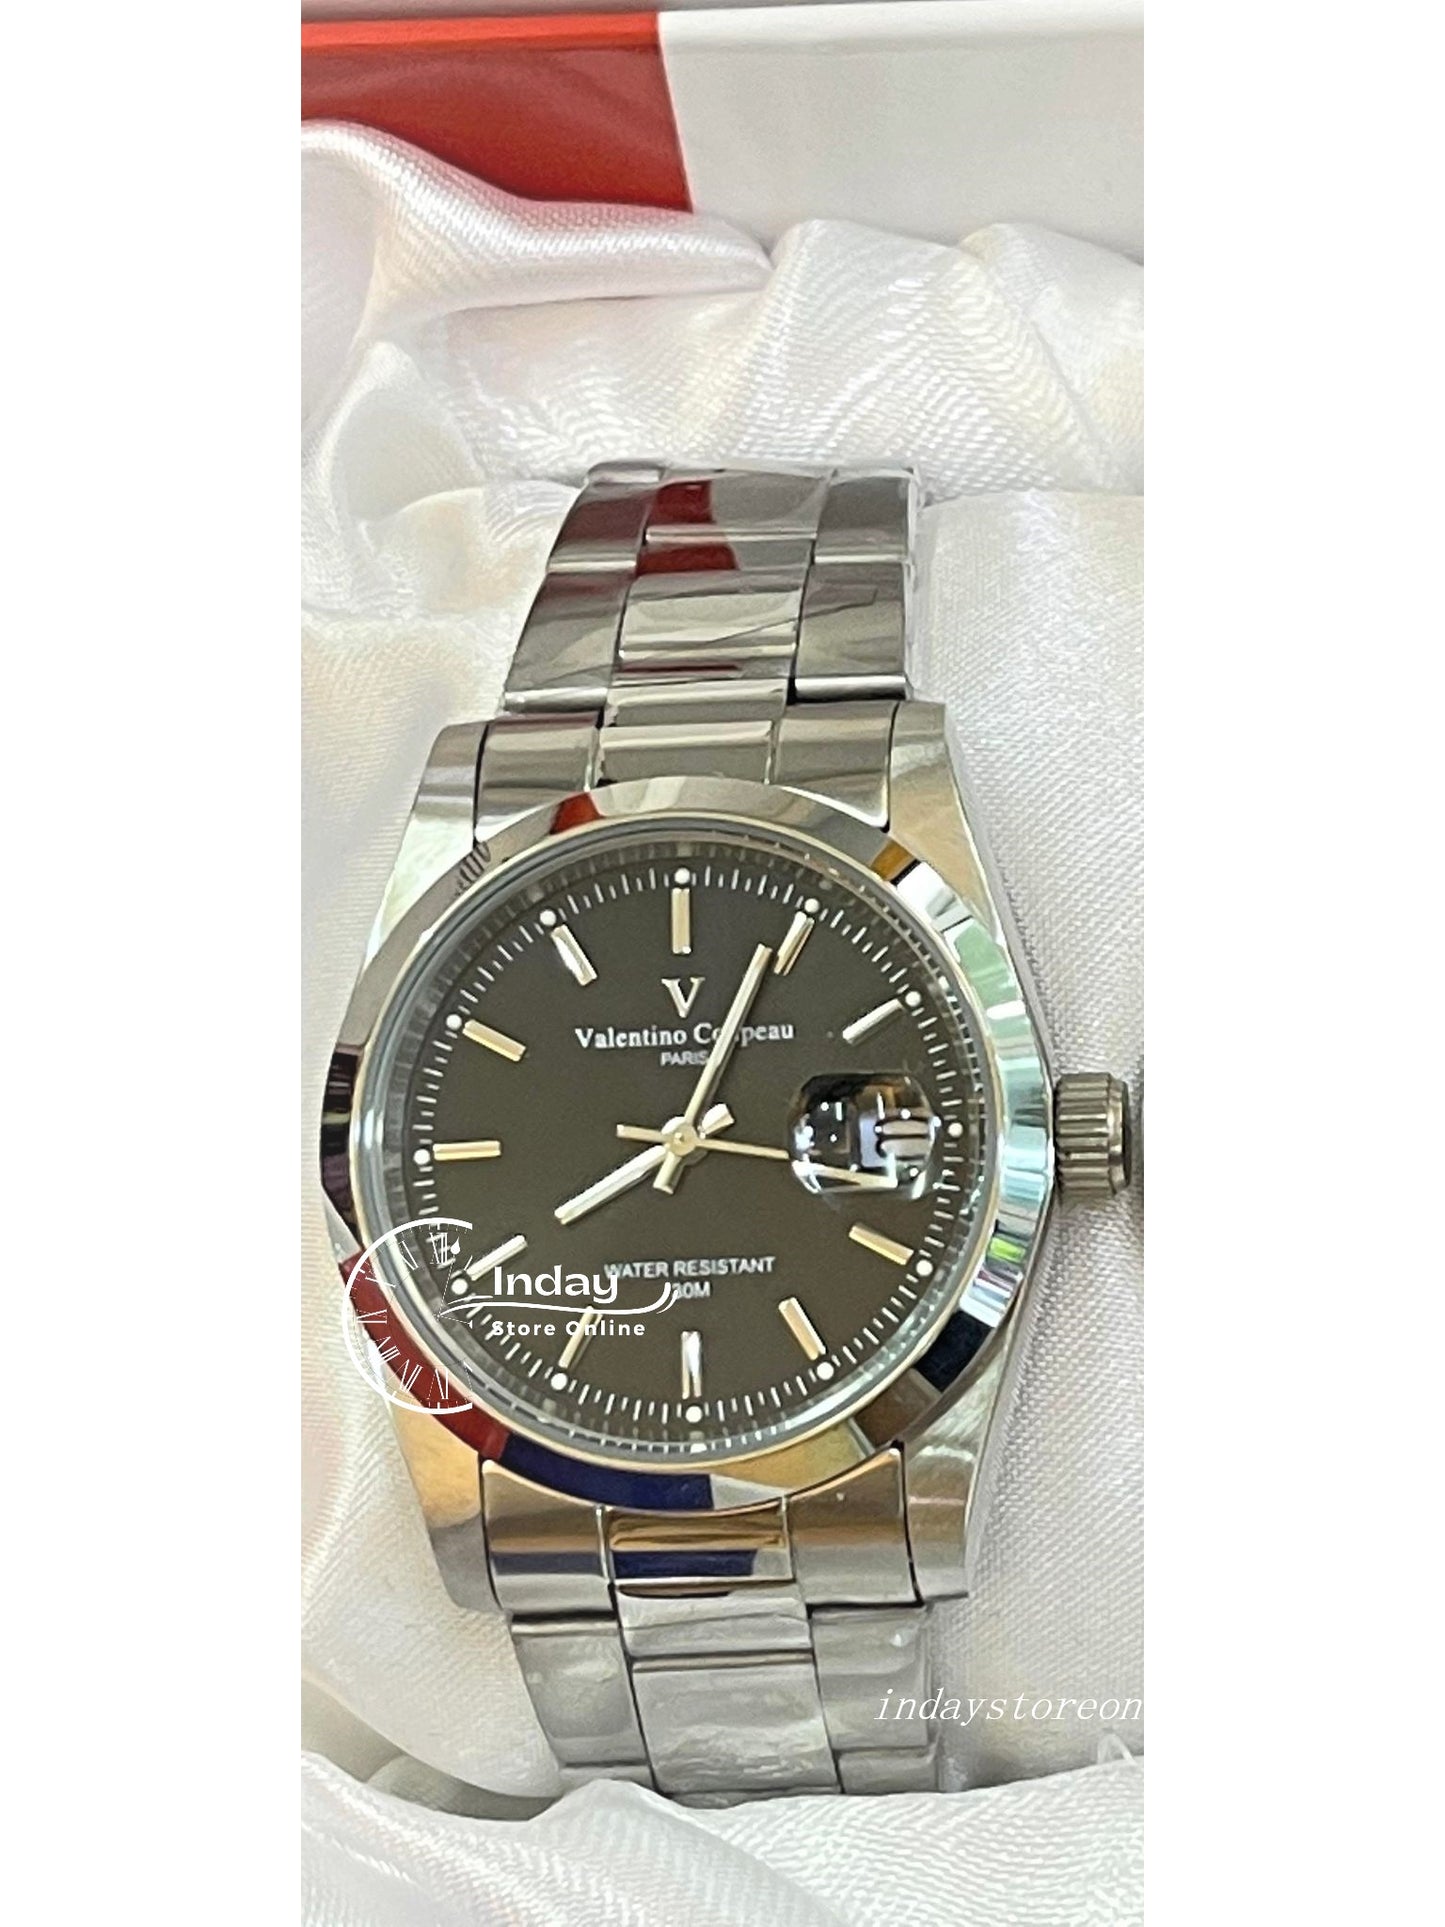 范倫鐵諾 古柏 Valentino Coupeau Men's Watch 12168SM-11